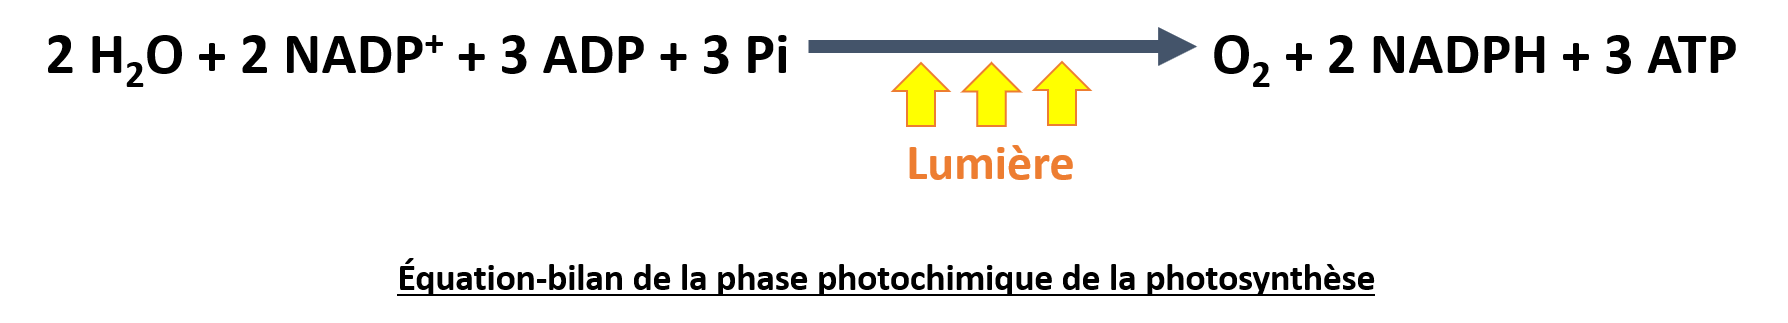 Équation-bilan de la phase photochimique de la photosynthèse